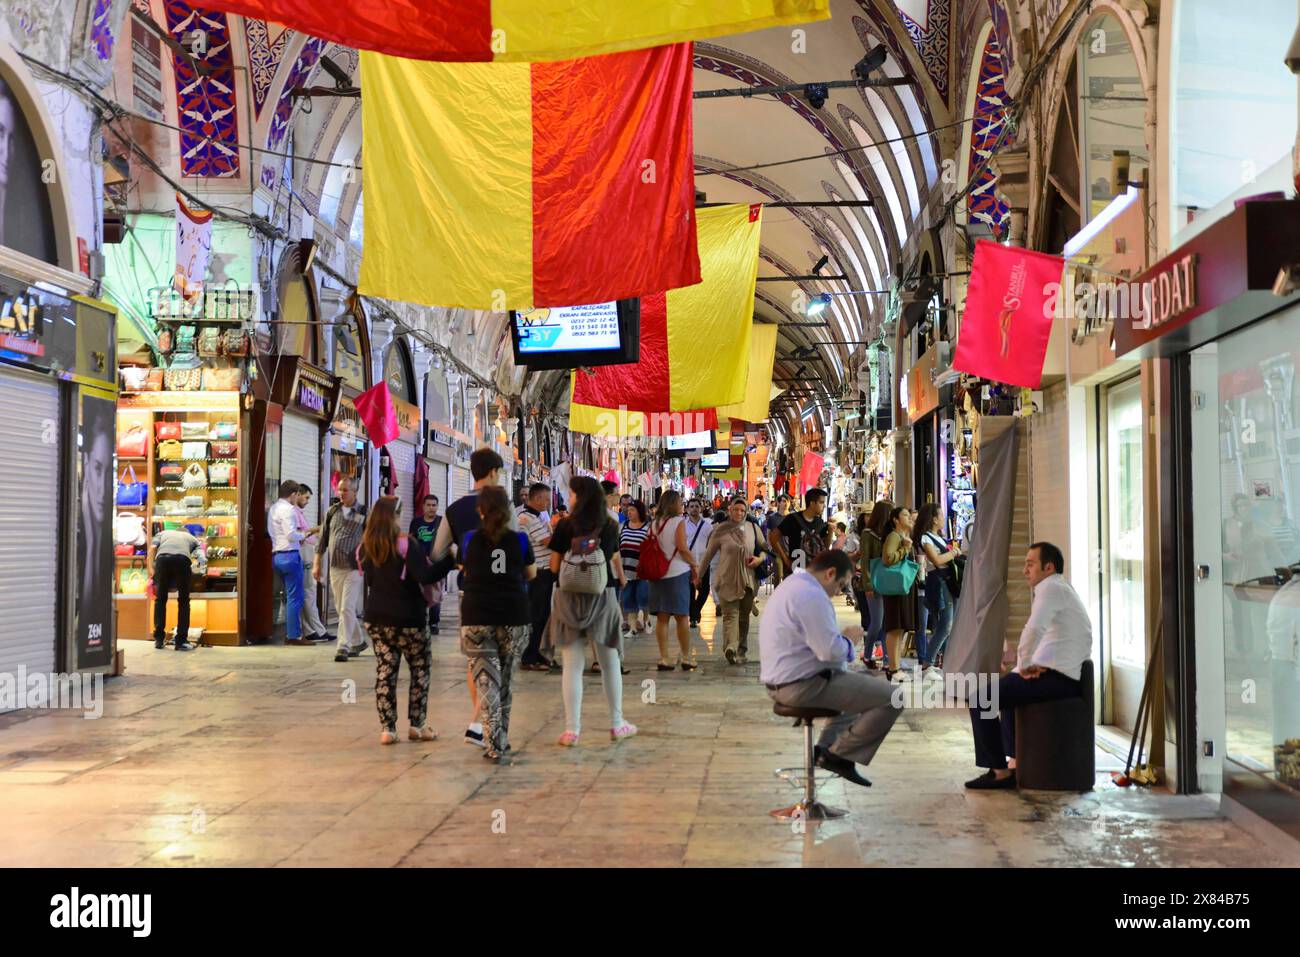 Grand Bazaar, Istanbul, Turchia, Asia, vivace bazar in serata, illuminato e decorato con bandiere rosse e gialle, folle di persone che fanno shopping Foto Stock